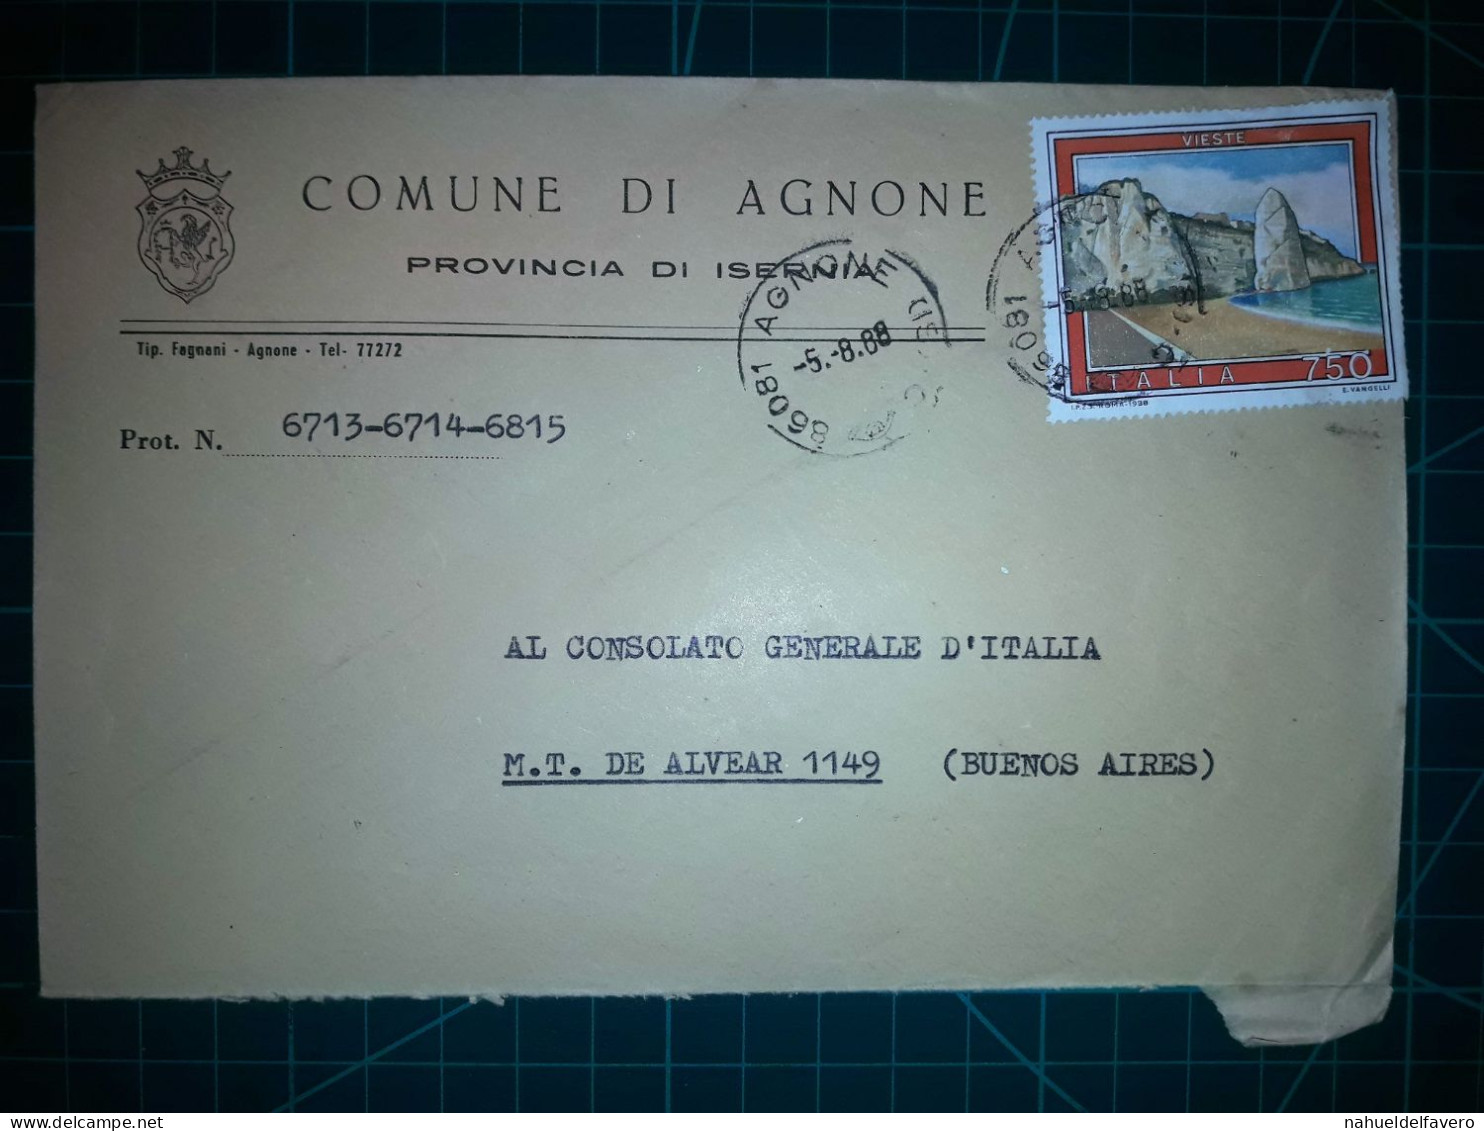 ITALIE, Enveloppe Communale Circulée à Buenos Aires, Argentine Avec Divers Timbres-poste (châteaux Et Autres). Commune: - 1981-90: Used